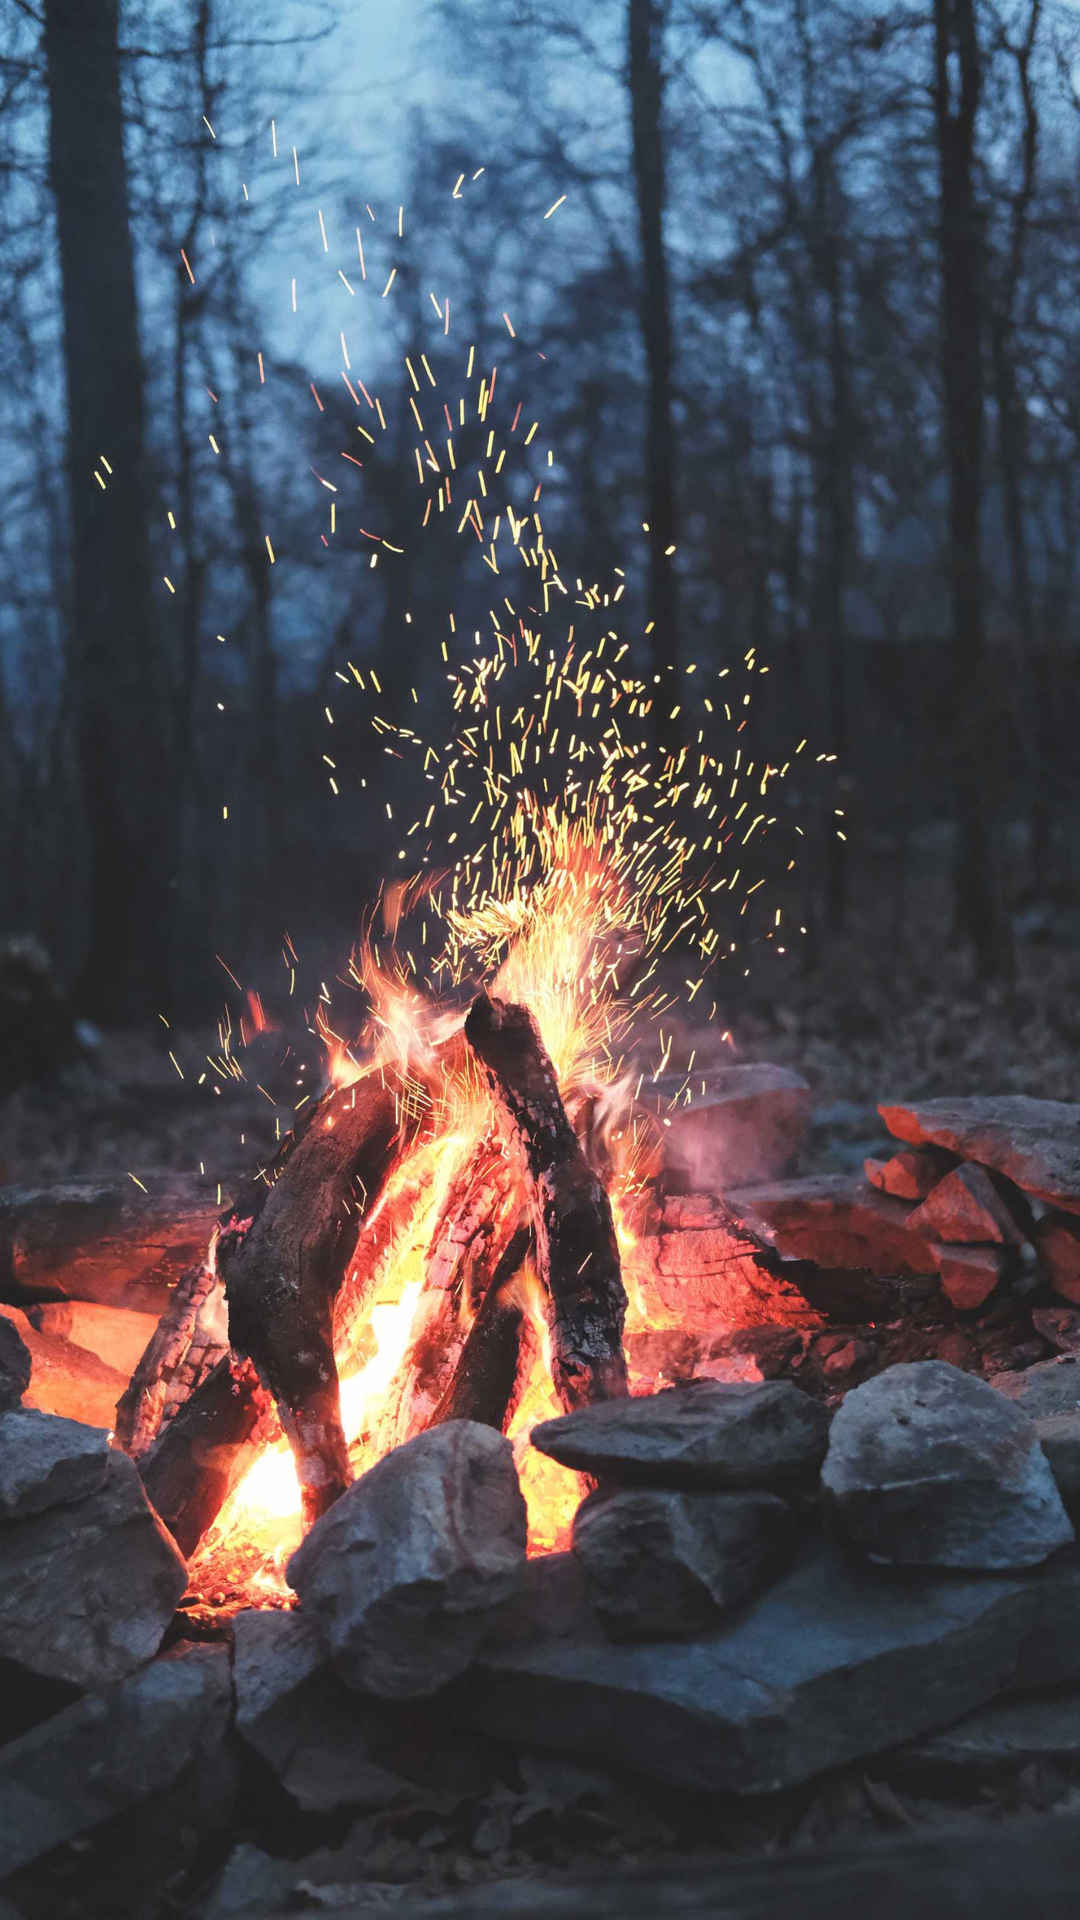 森林里燃烧的篝火唯美摄影手机壁纸-